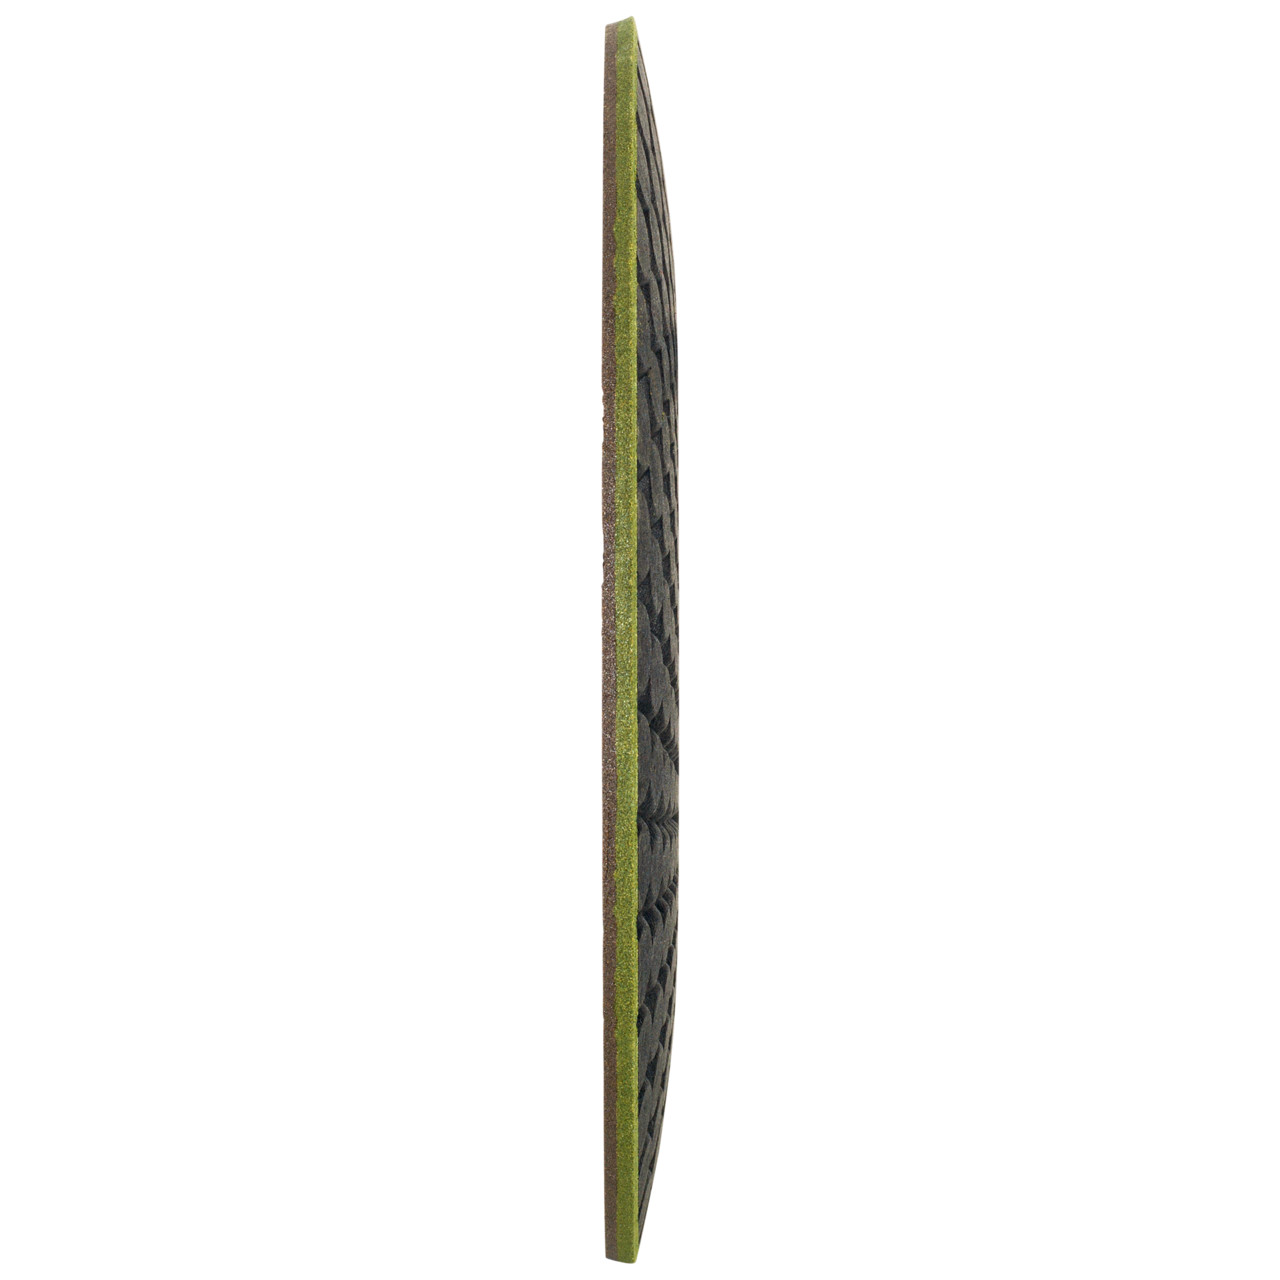 TYROLIT RONDELLER DxH 178x22.23 Voor steen, vorm: 29RON (Rondeller®), Art. 908223